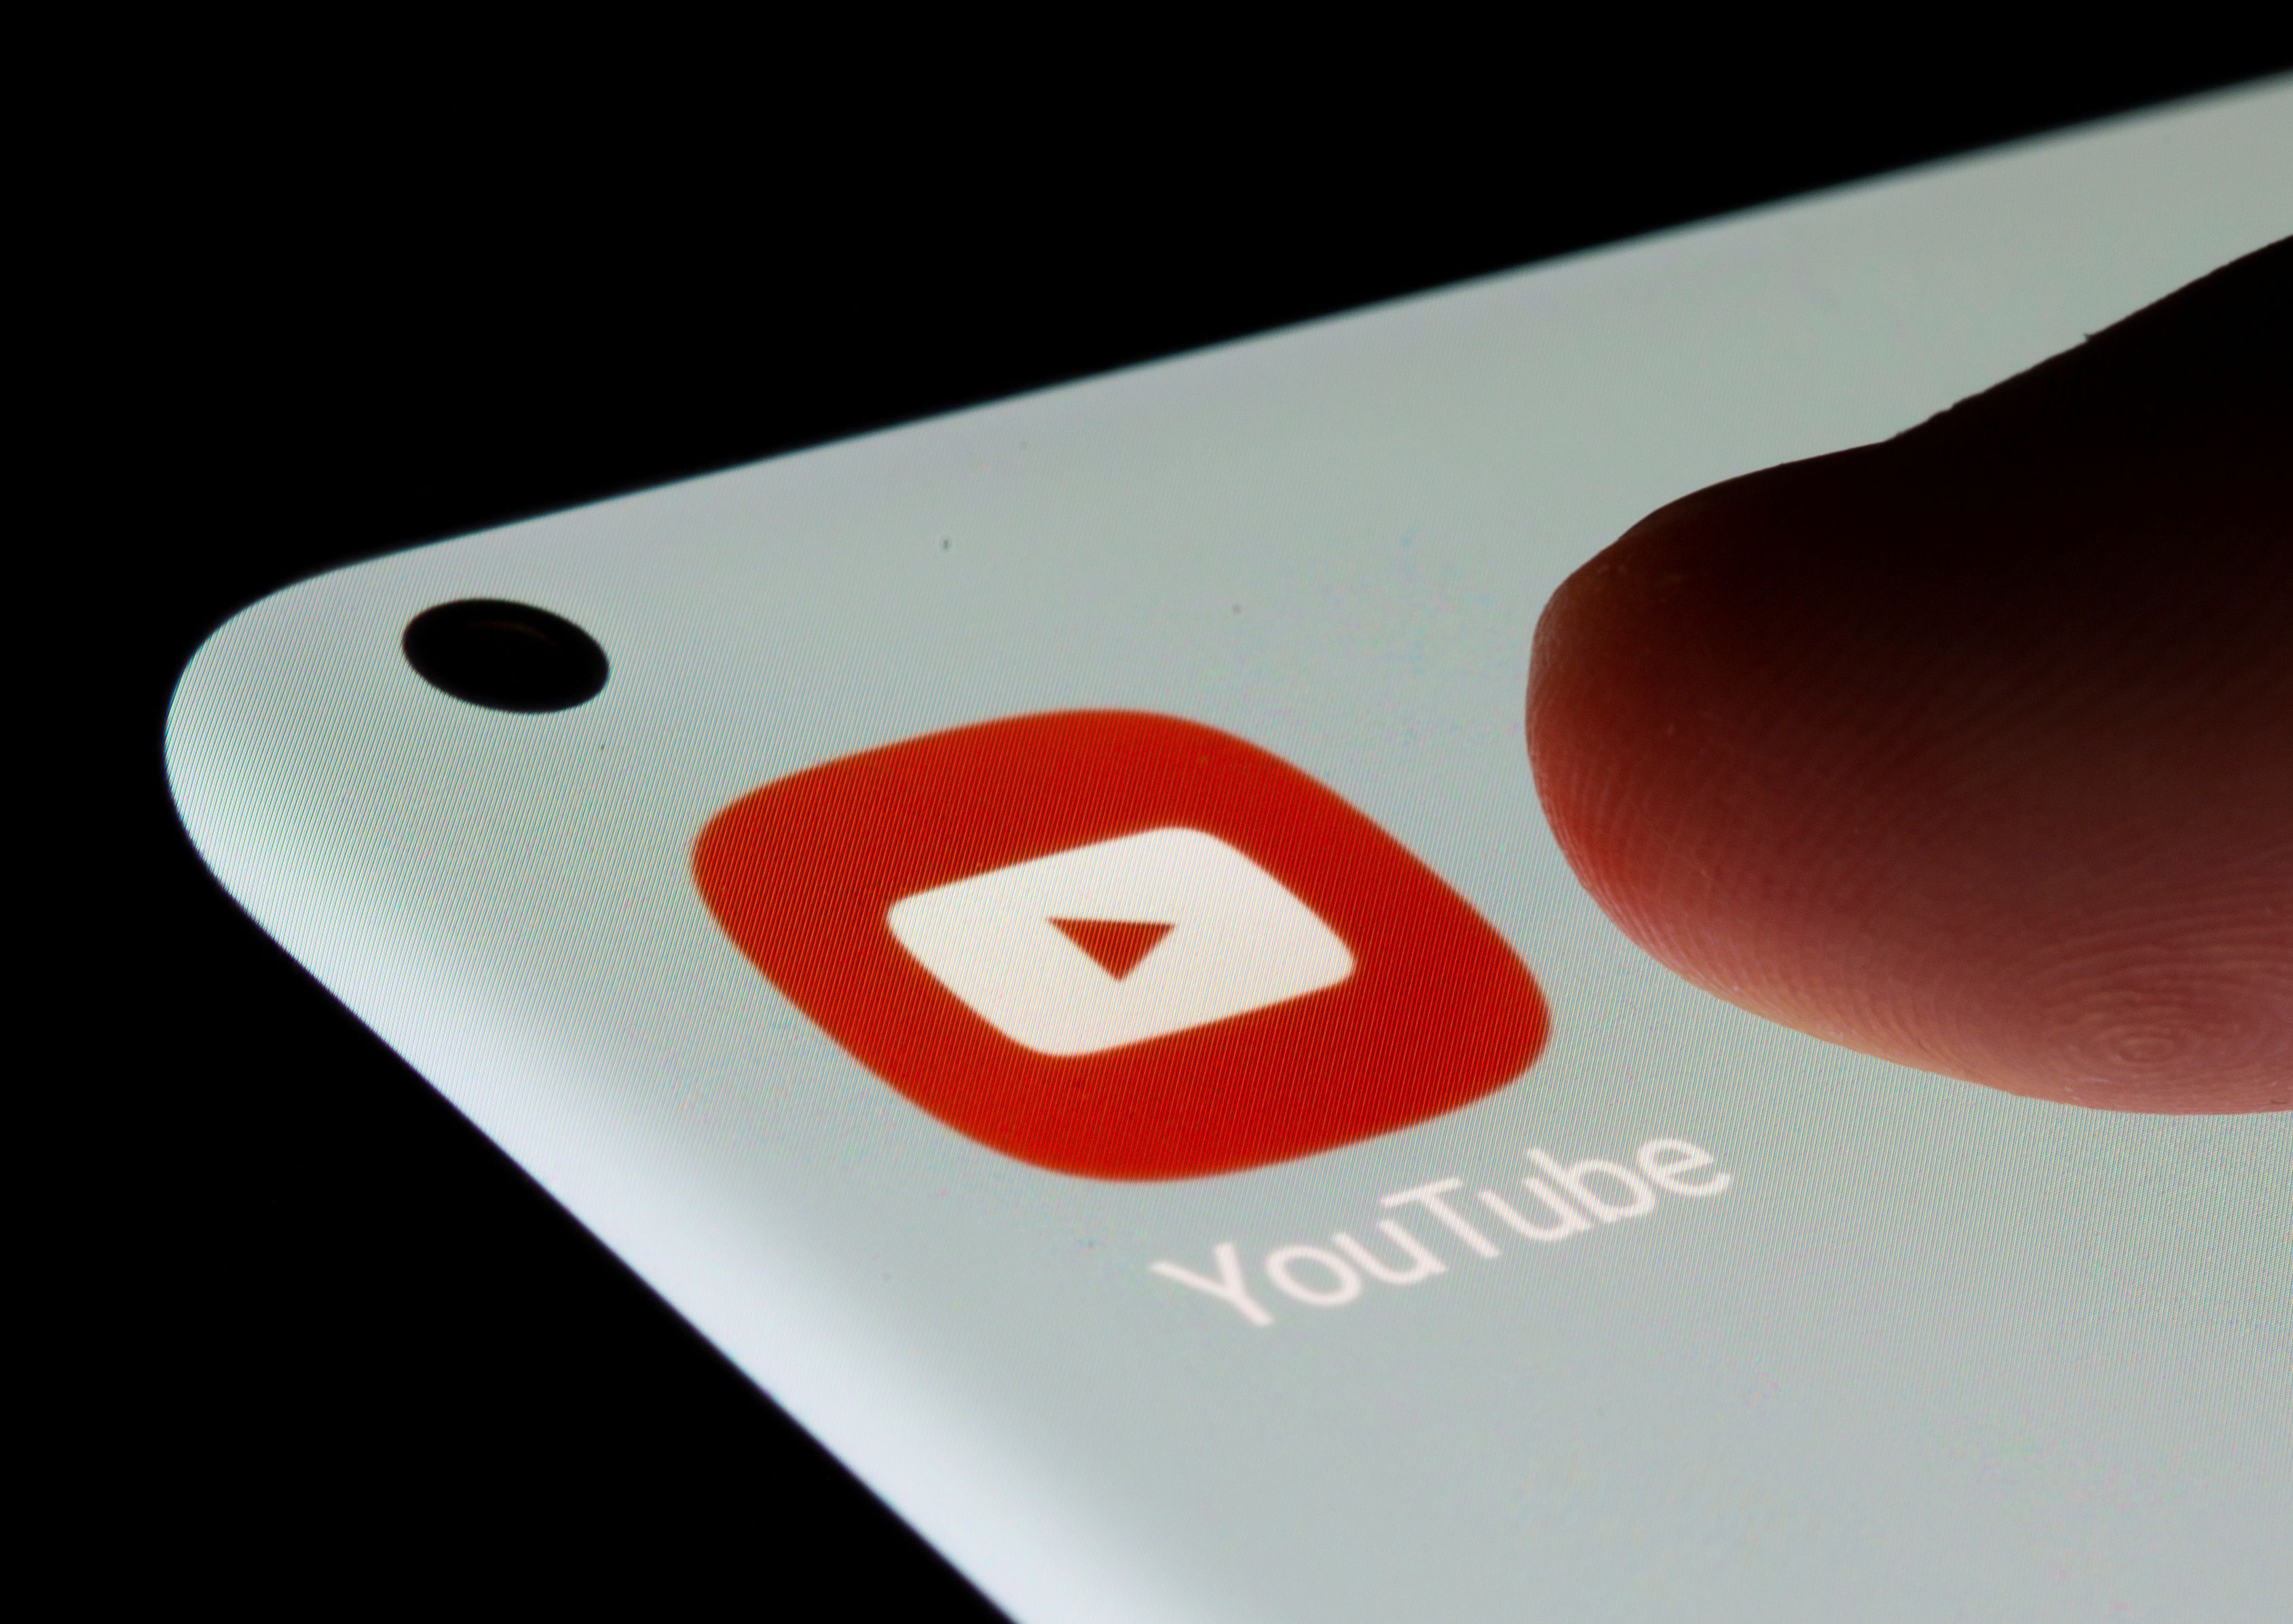 Les vidéos YouTube perdraient 10 de leur qualité sonore originale après être uploadées.